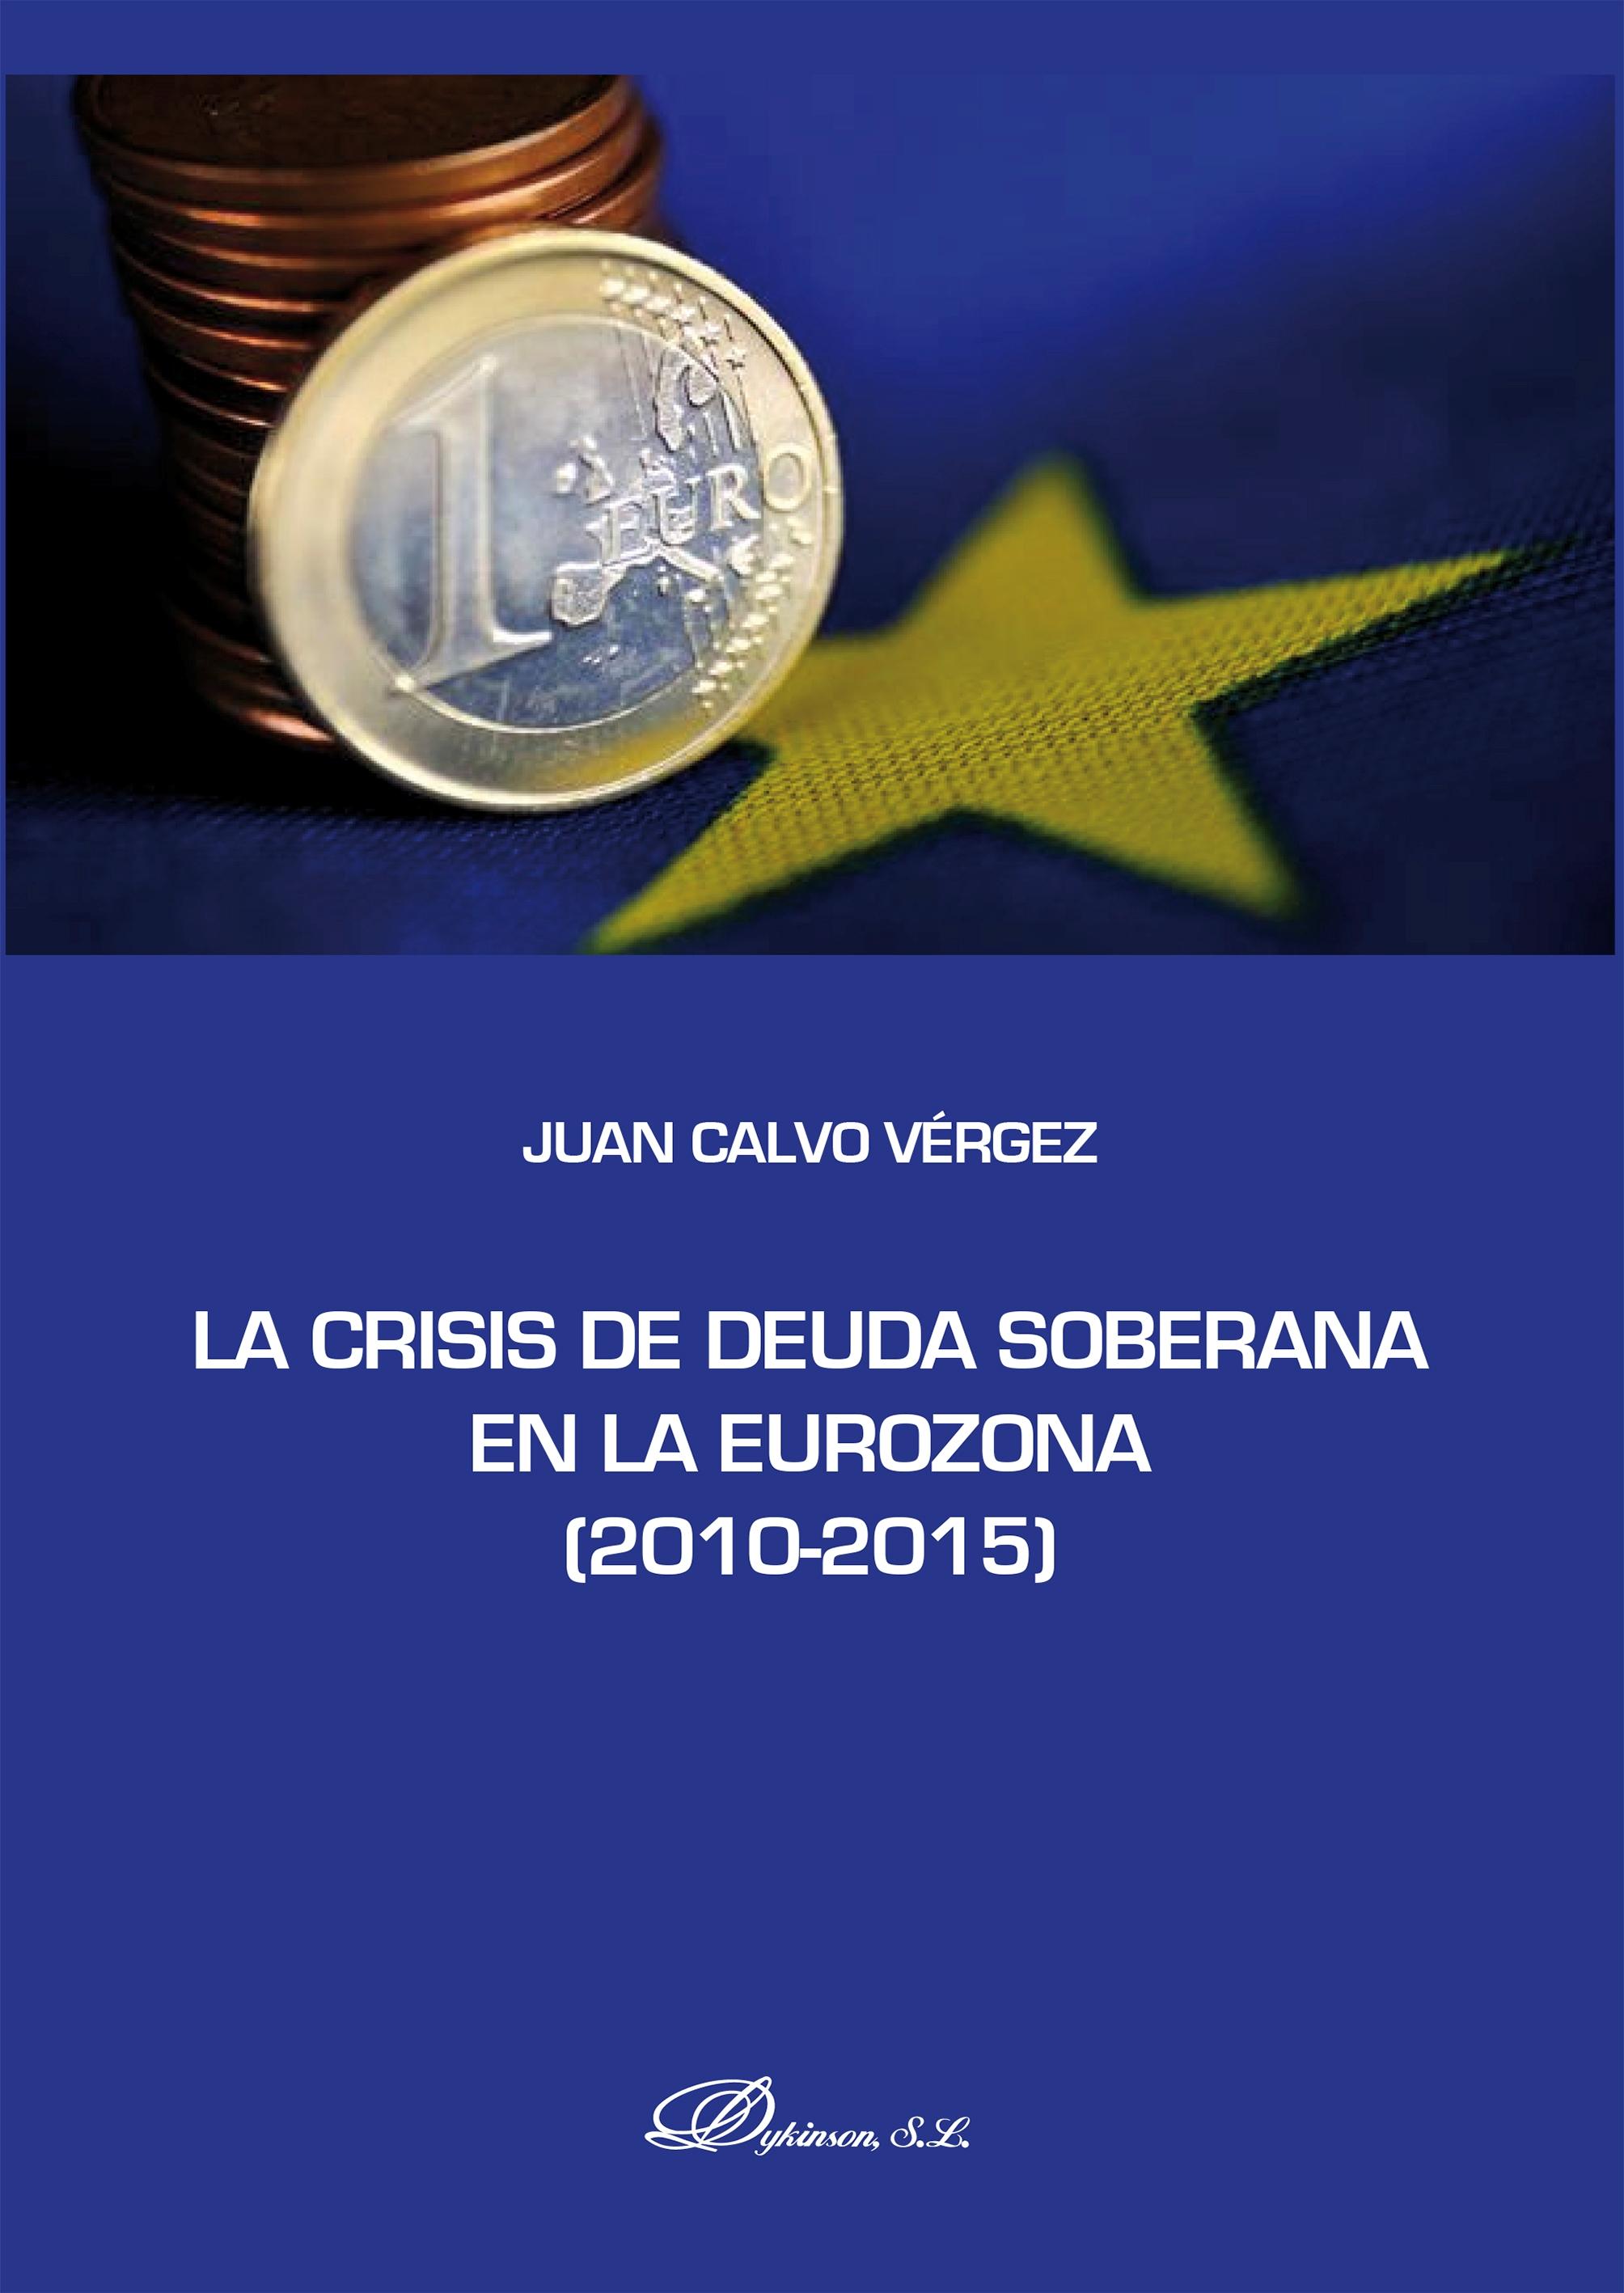 La crisis de la deuda soberana en la Eurozona (2010-2015)